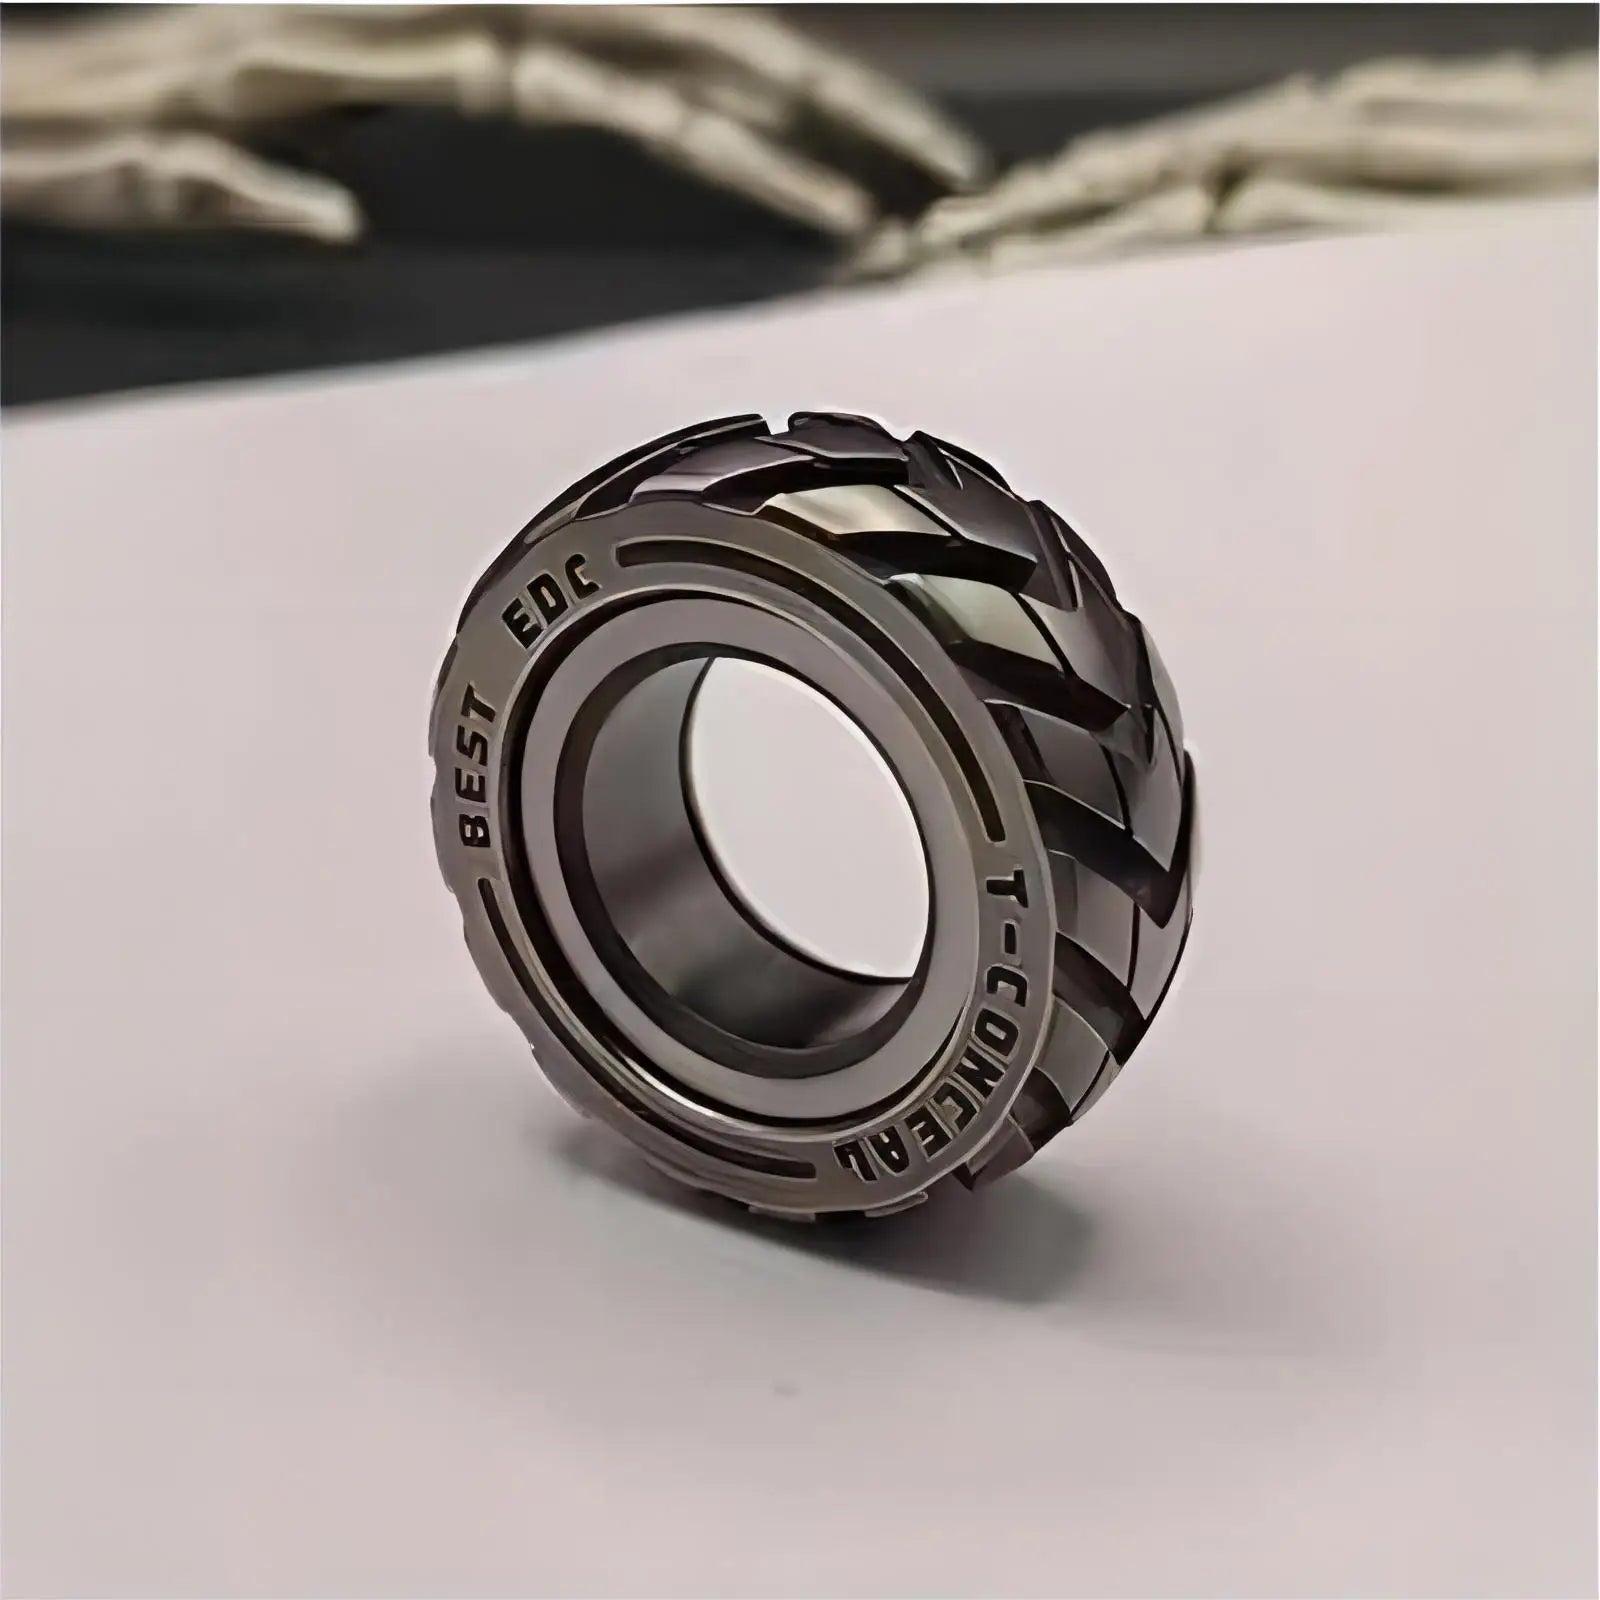 Mechanic Ring EDC Fidget Spinner (BUY 2 FREE SHIPPING)